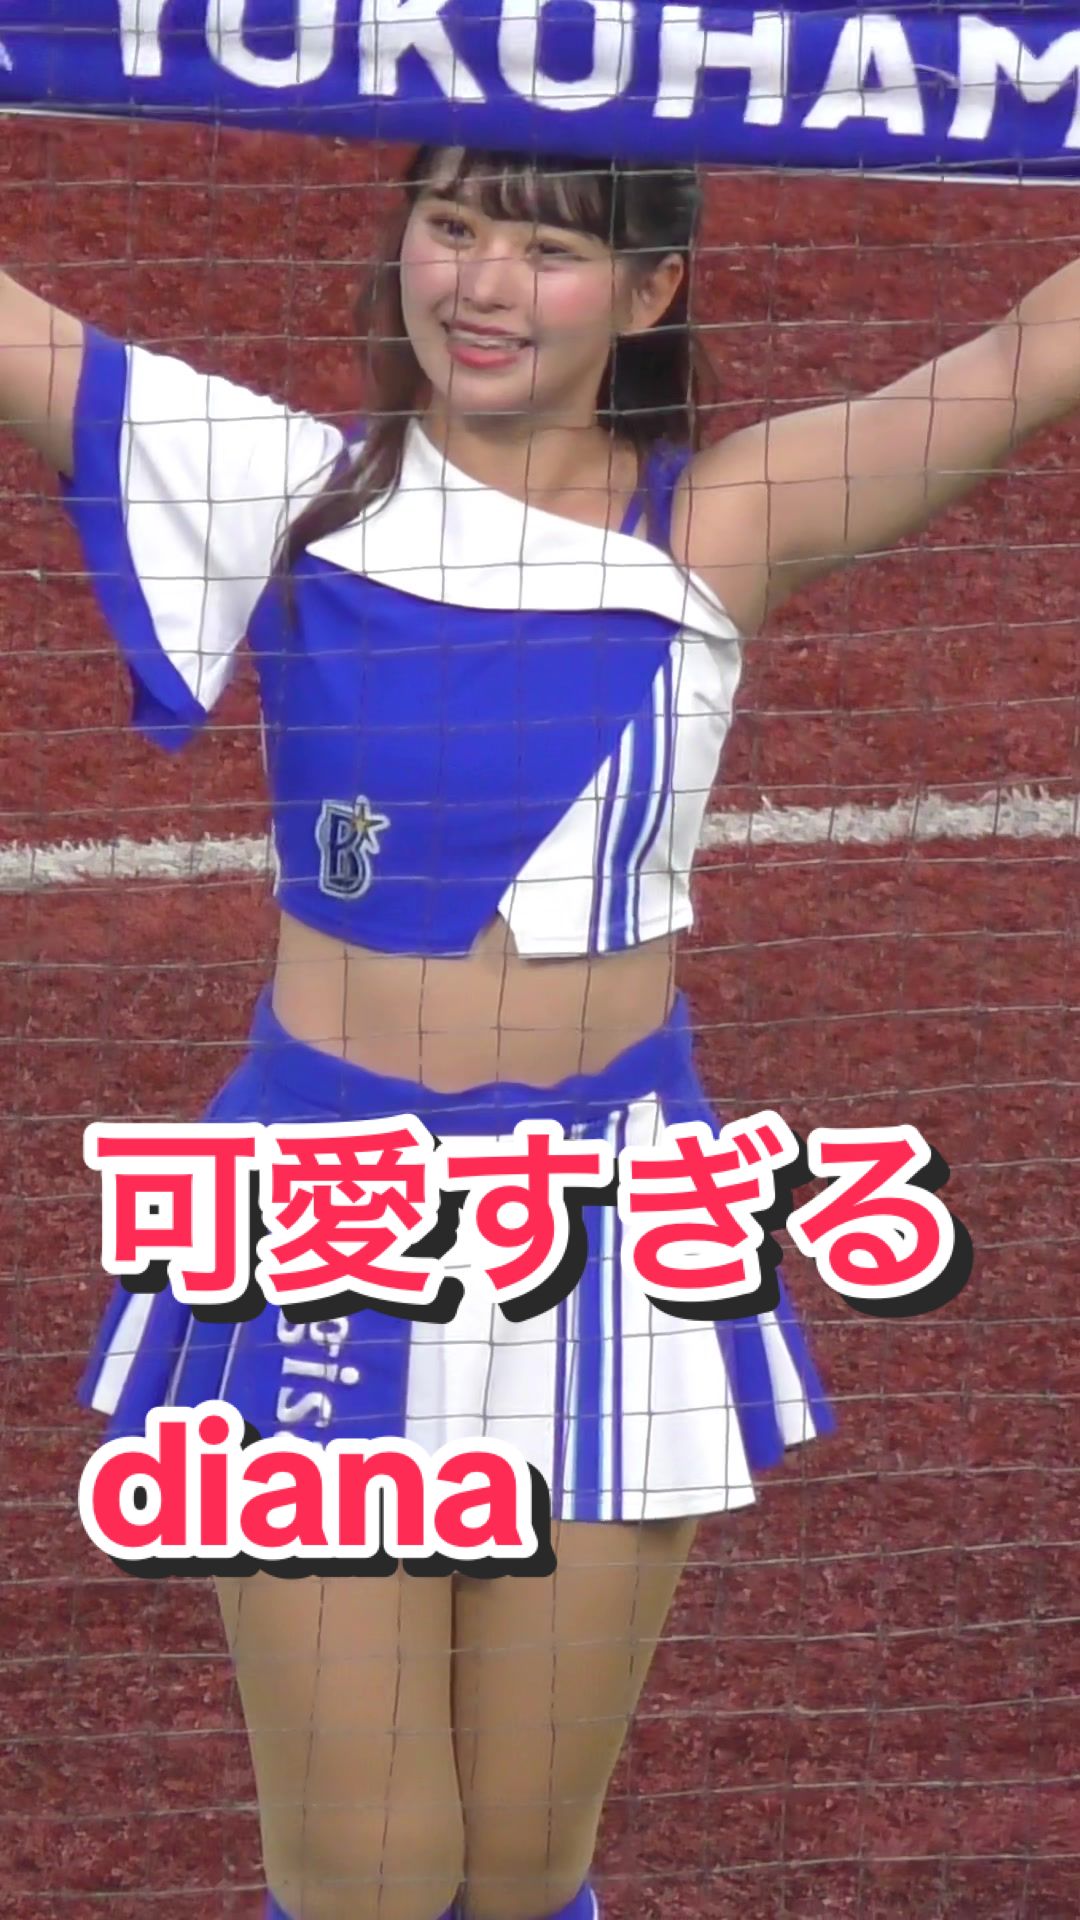 【激カワチアリーダー！】可愛すぎるdiana #kawaii #cheerleading #cheerleader #bravetv #ブレイブtv #diana 